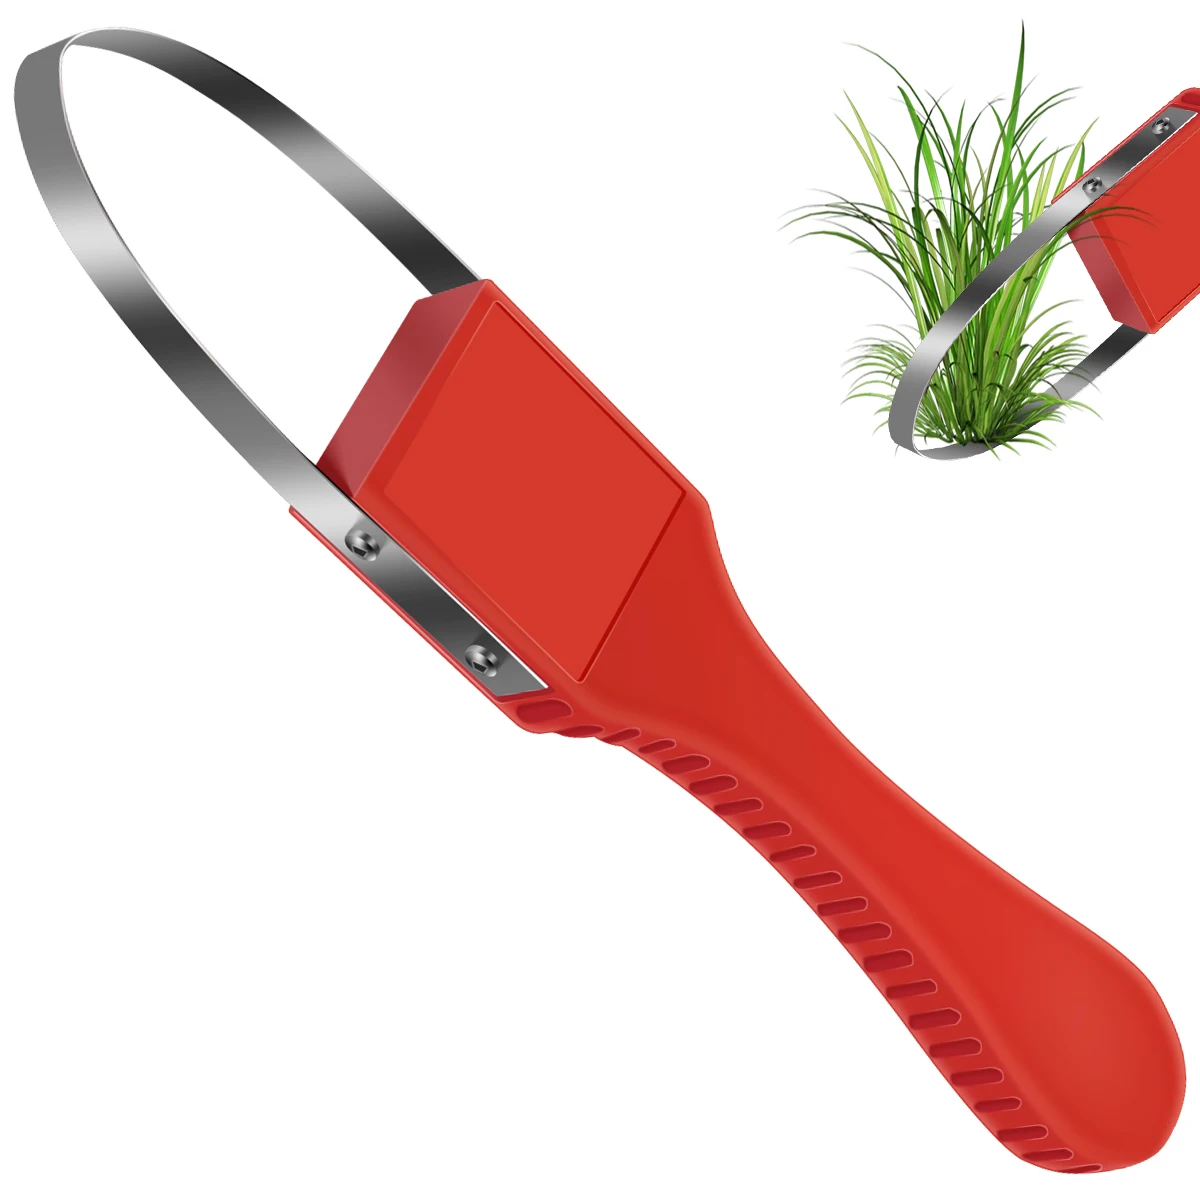 

Red Hand Loop Weeder Tool Manual Weeder with Sharp Metal Blade Gardening Weeding Tools for Weeding Loosening Planting